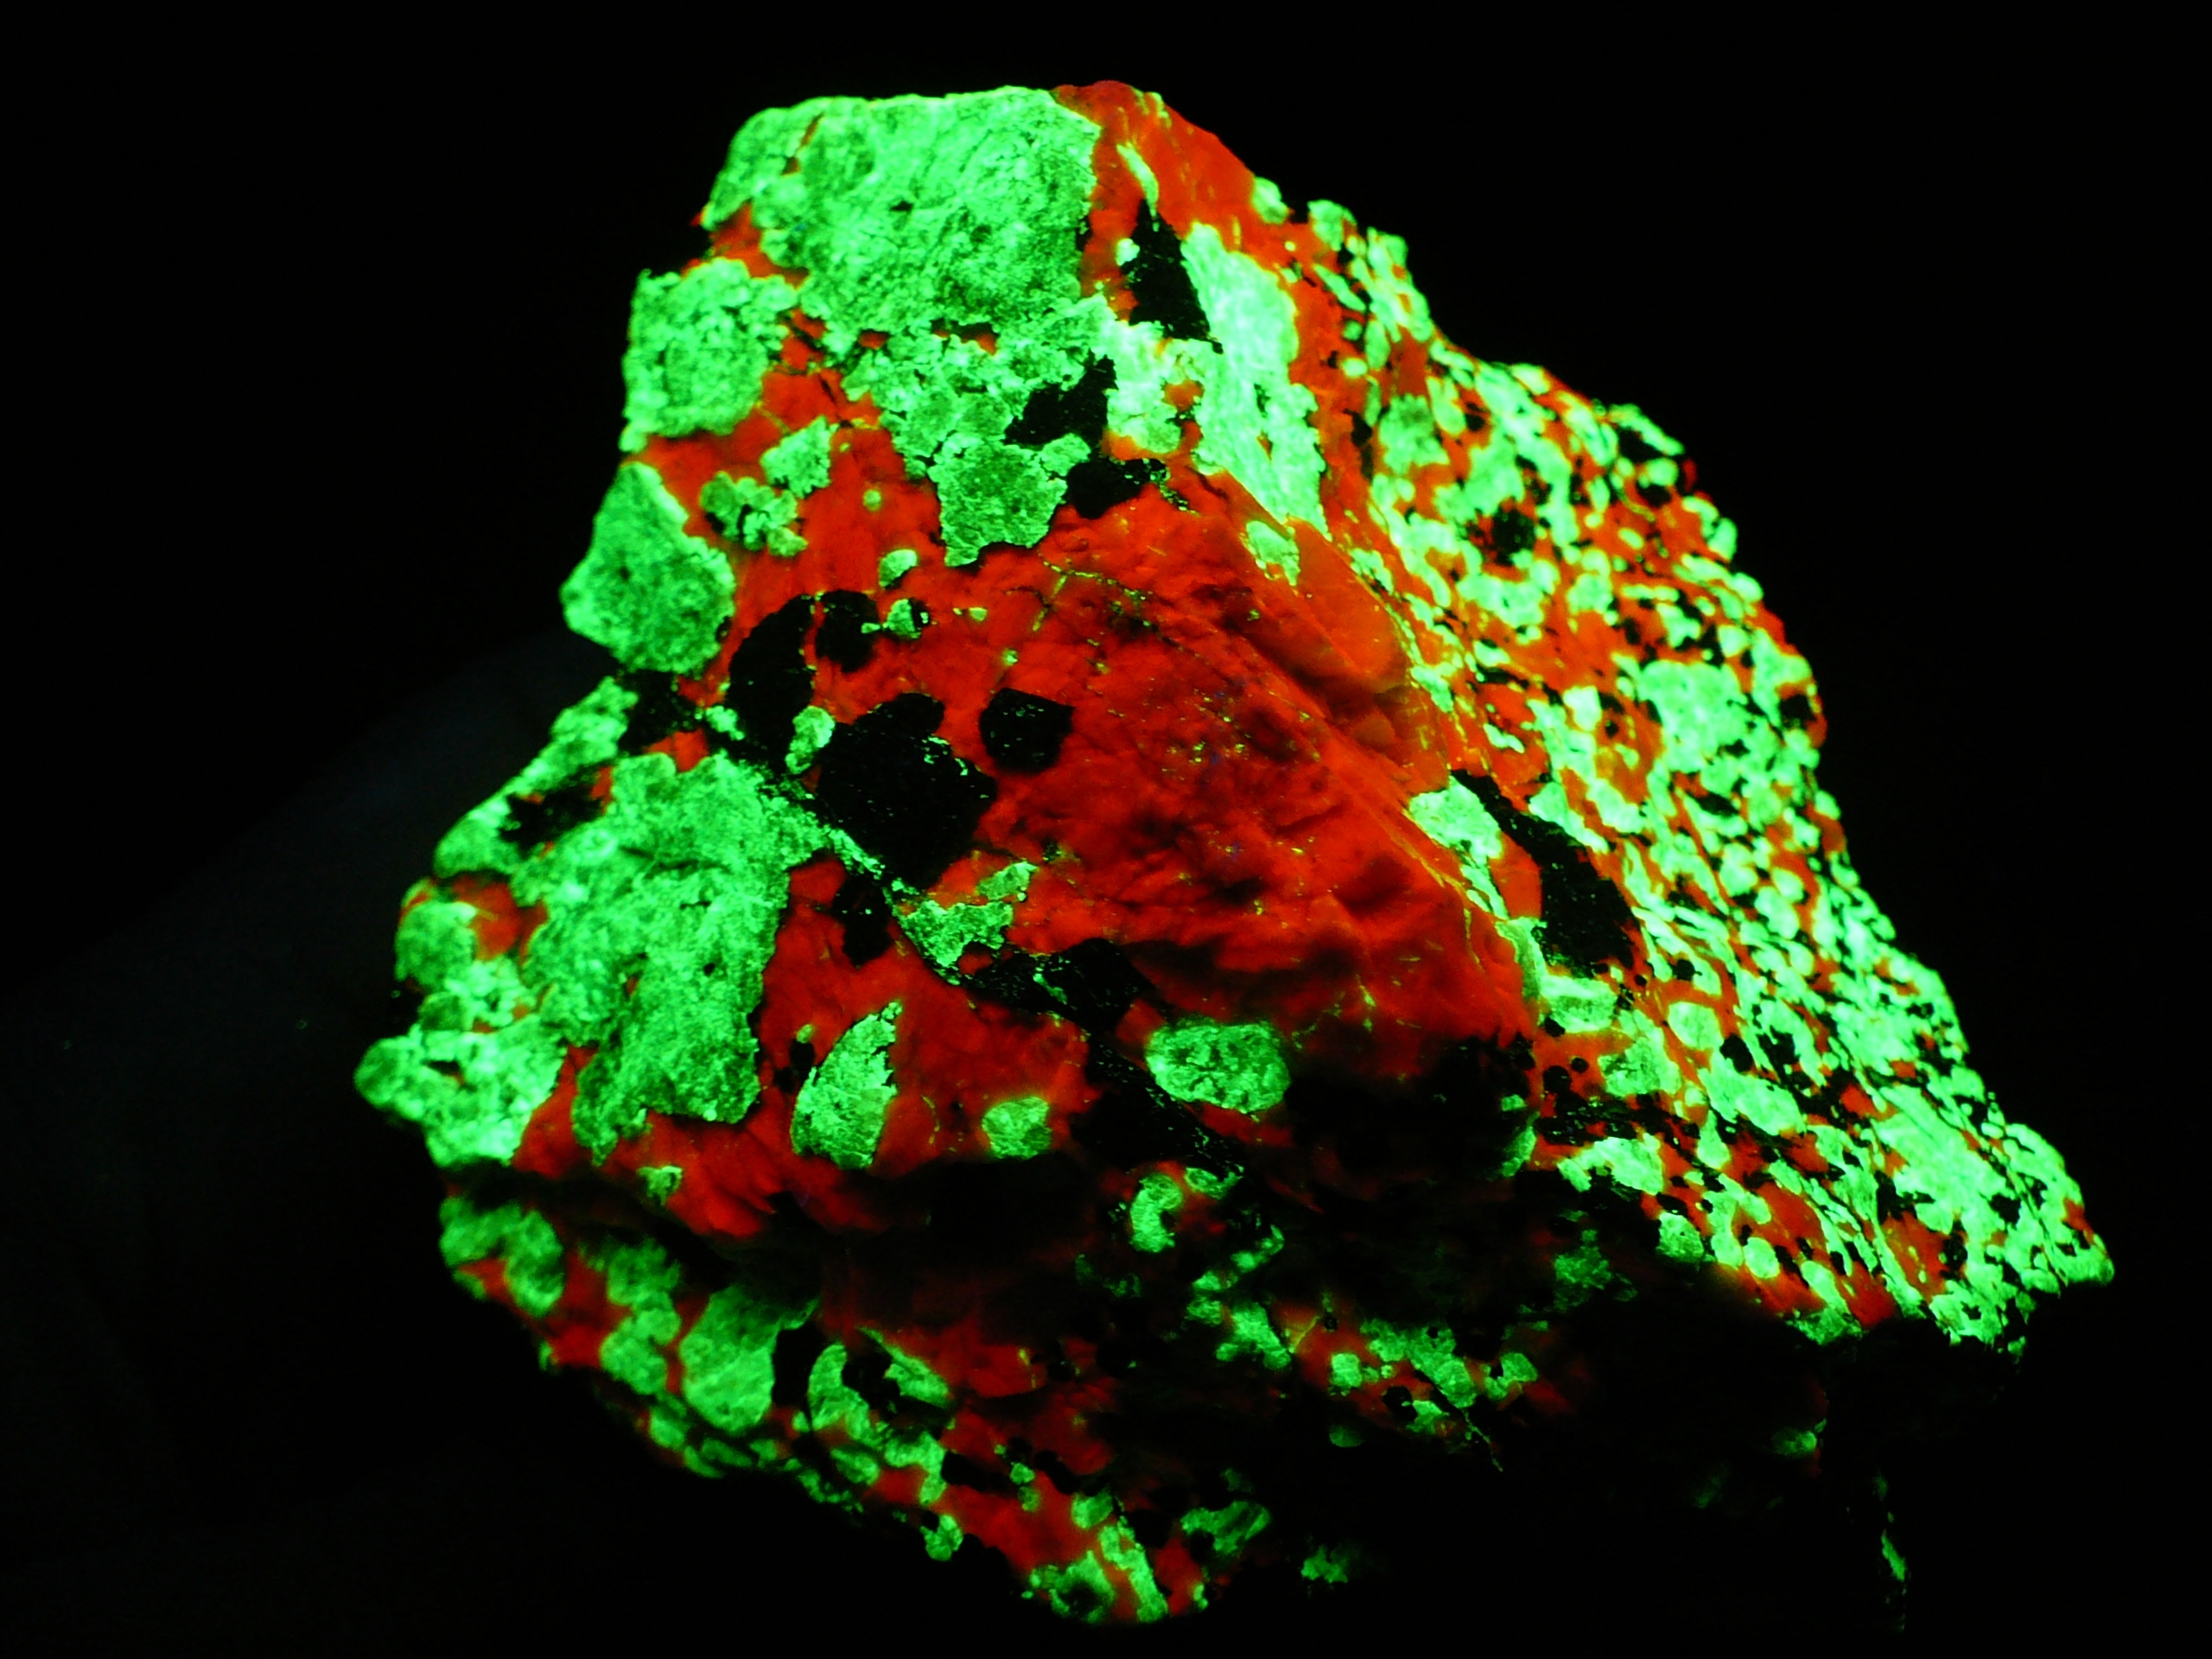 Fluorescent willemite, calcite and non-fluorescent franklini